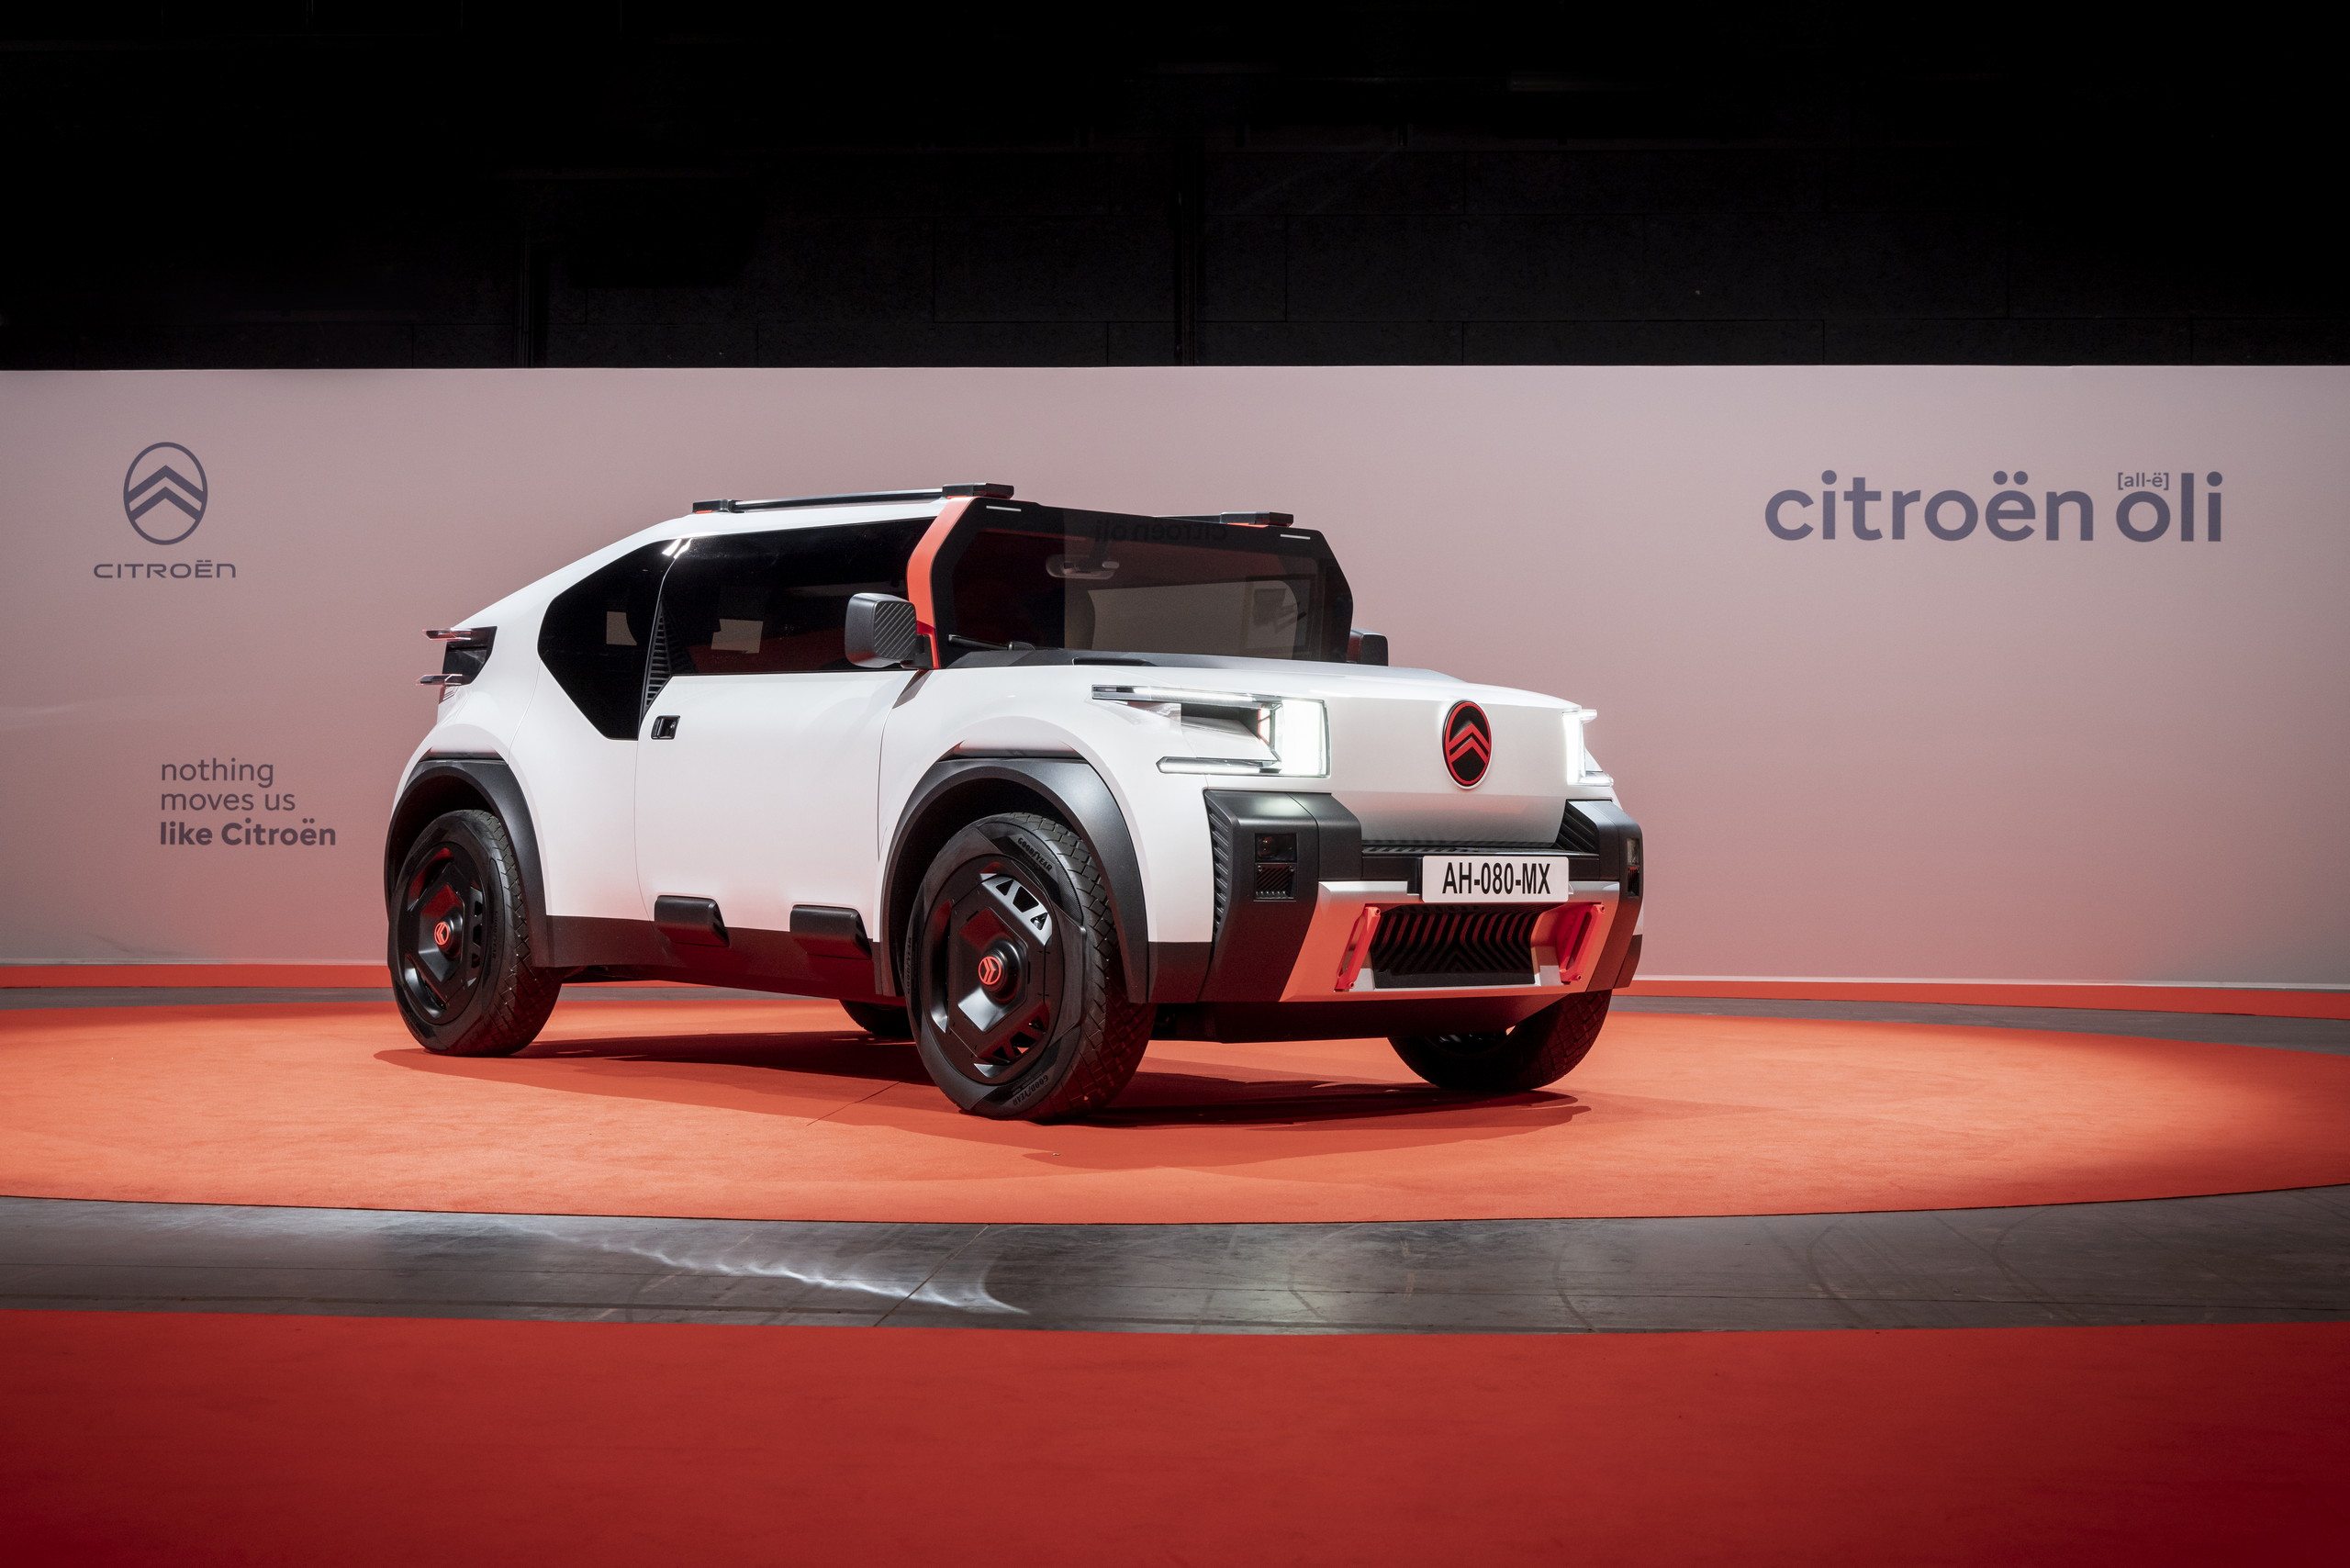 citroen apresenta o novo oli carro eletrico feito de papelao com nova tecnologia que promete inovar o setor automobilistico